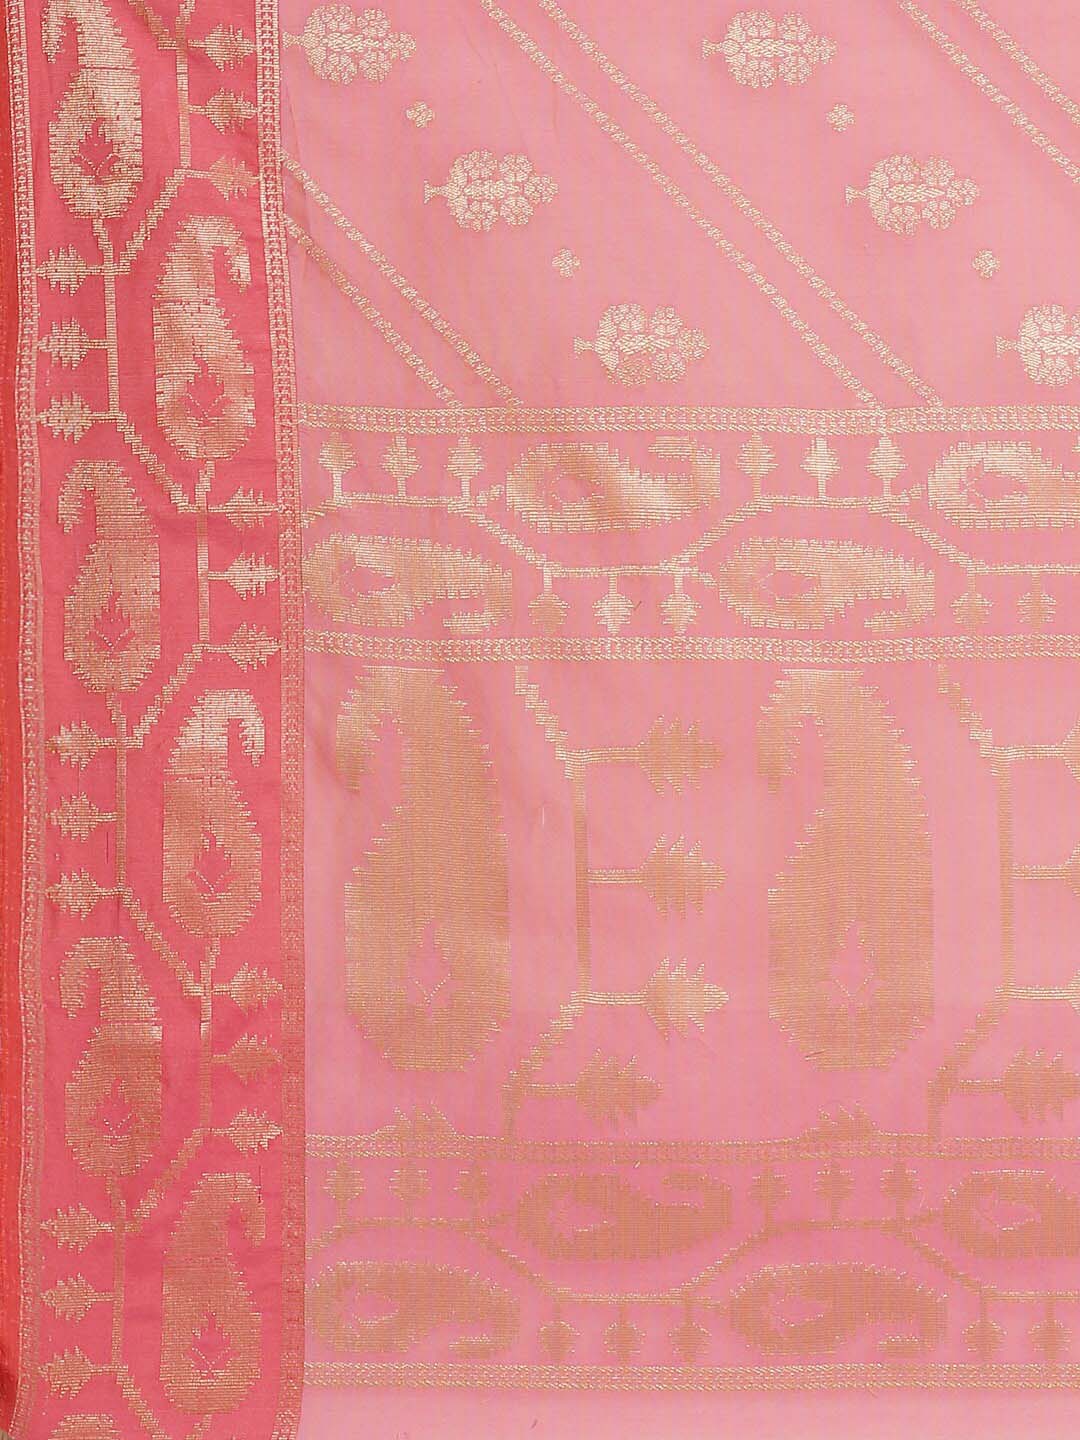 Indethnic Banarasi Fuchsia Woven Design Daily Wear Saree - Saree Detail View